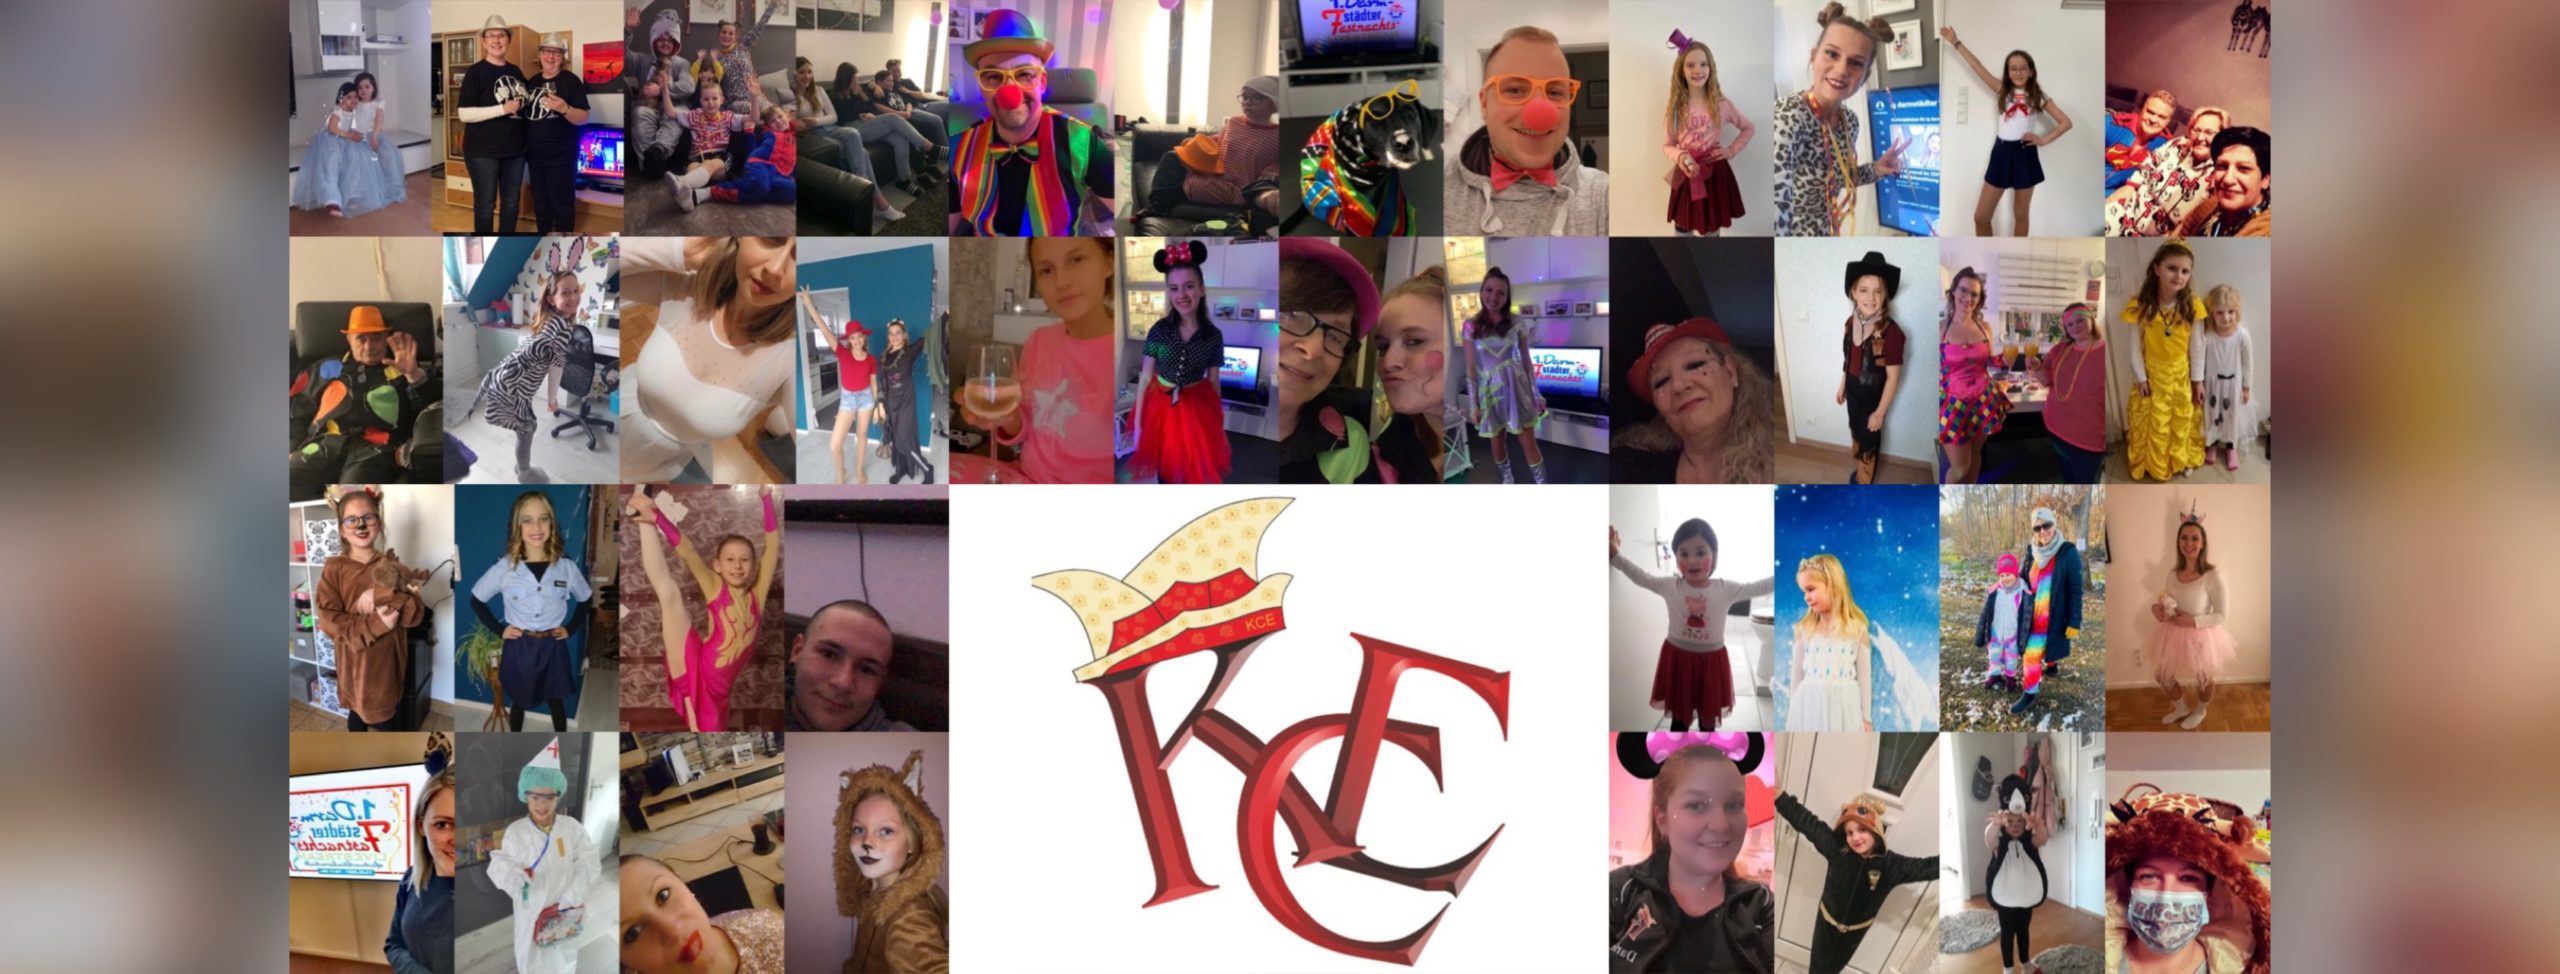 Tanzsport- und Karneval Club Eiche – KCE